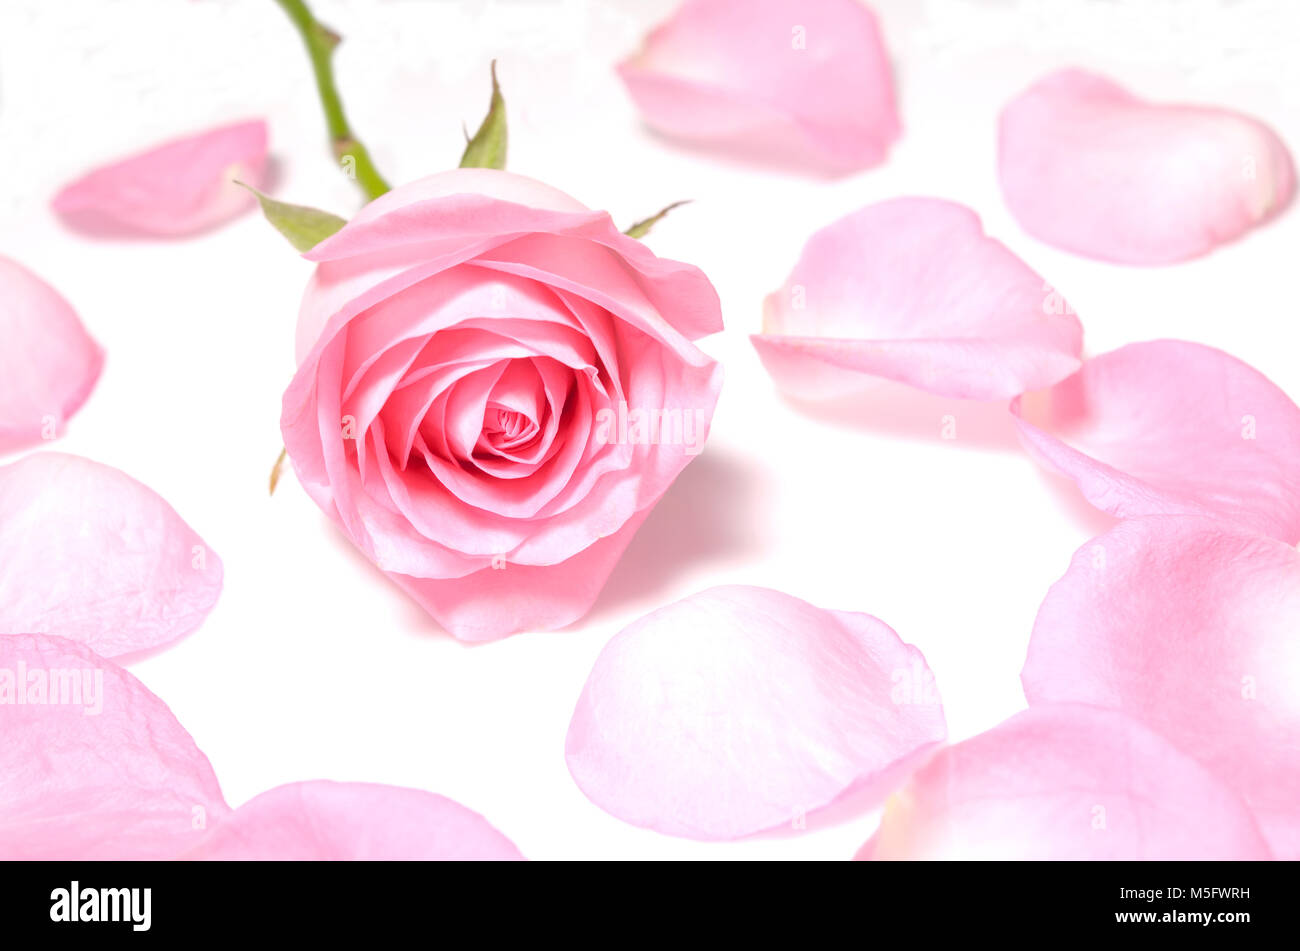 Isolare rosa rosa, un primo piano immagine fotografica del singolo rosa rosa fiore intorno da un rosa petalo di rosa di isolare su sfondo bianco, fiore su petali polv Foto Stock